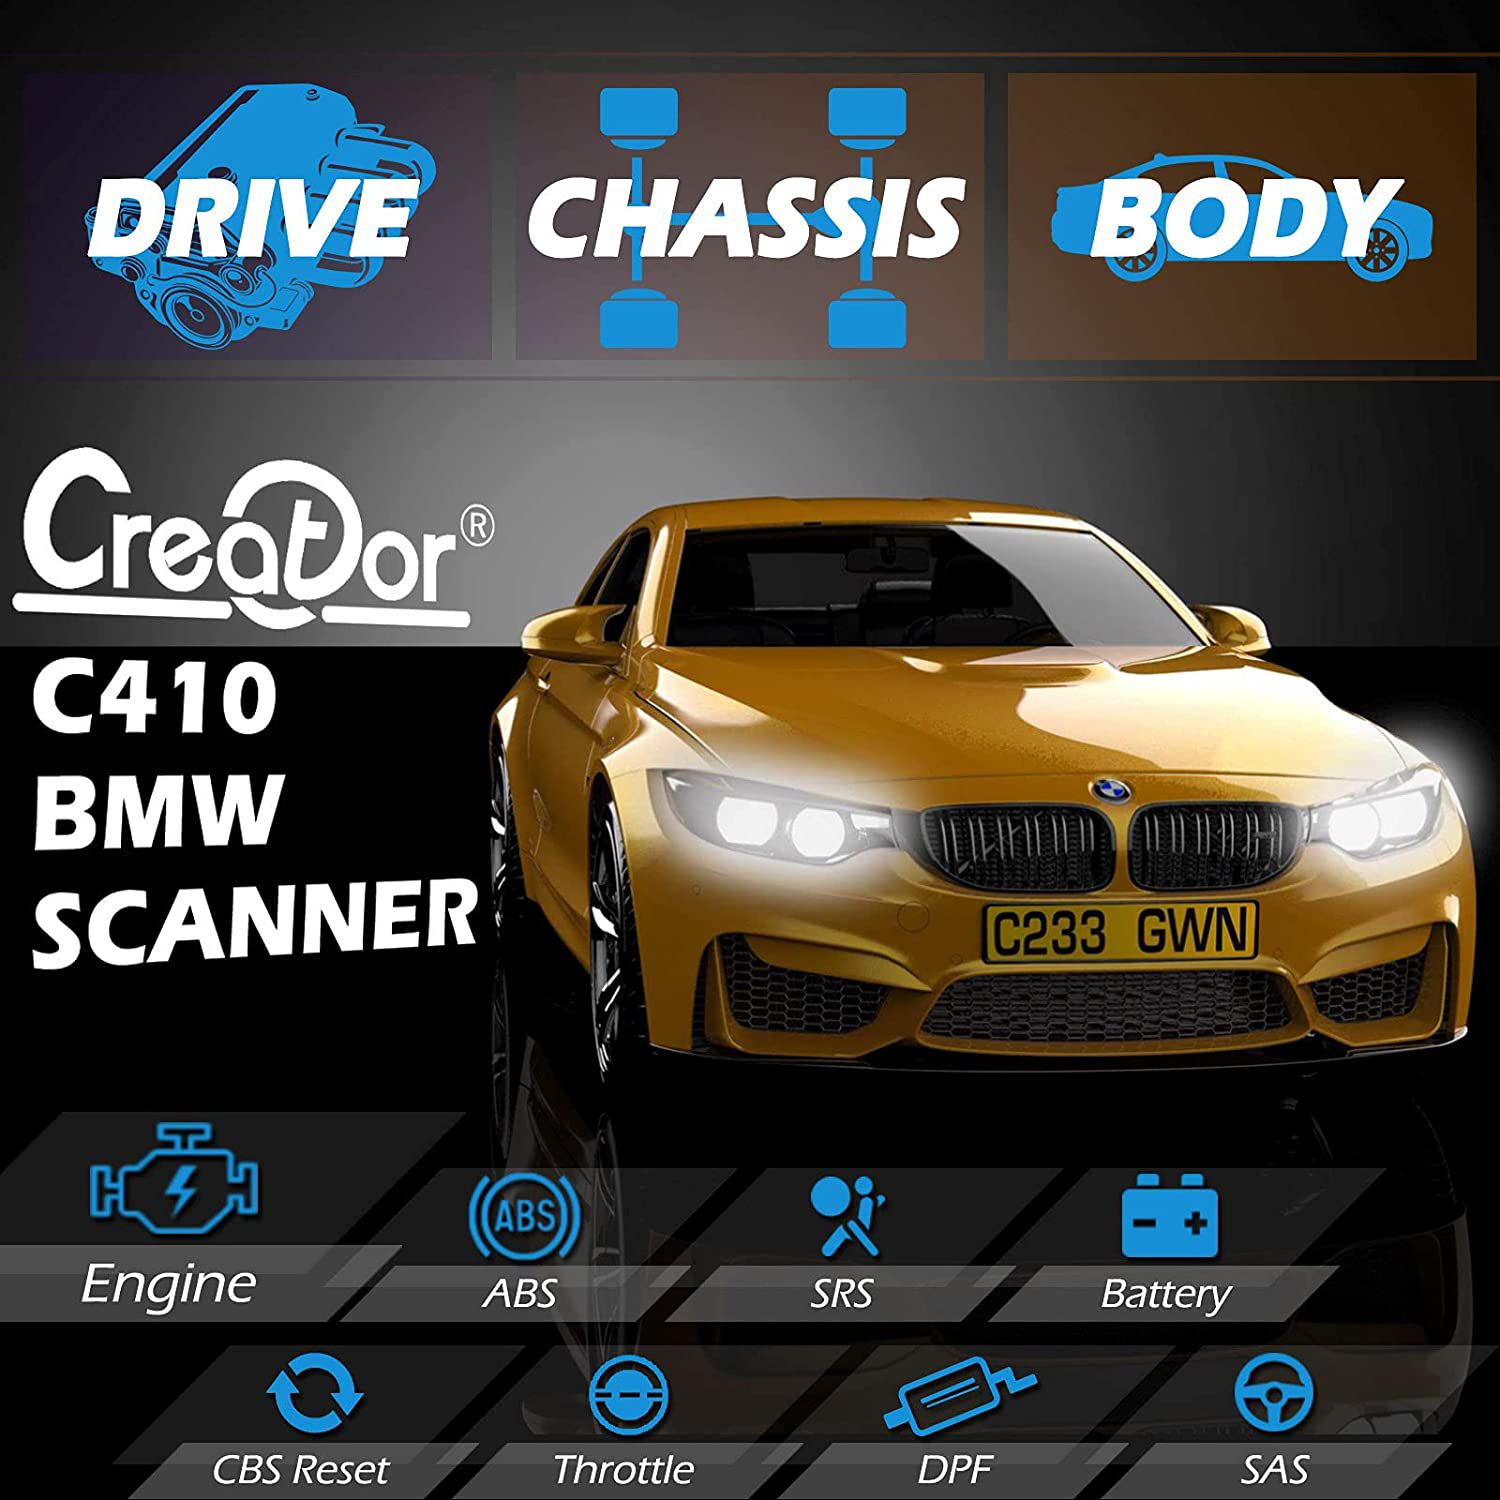 Criador C410 Professional OBD2 Scanner Code Reader para BMW Mini Cooper Scan Tool Multi-Systems Ferramenta de verificação diagnóstica com ABS